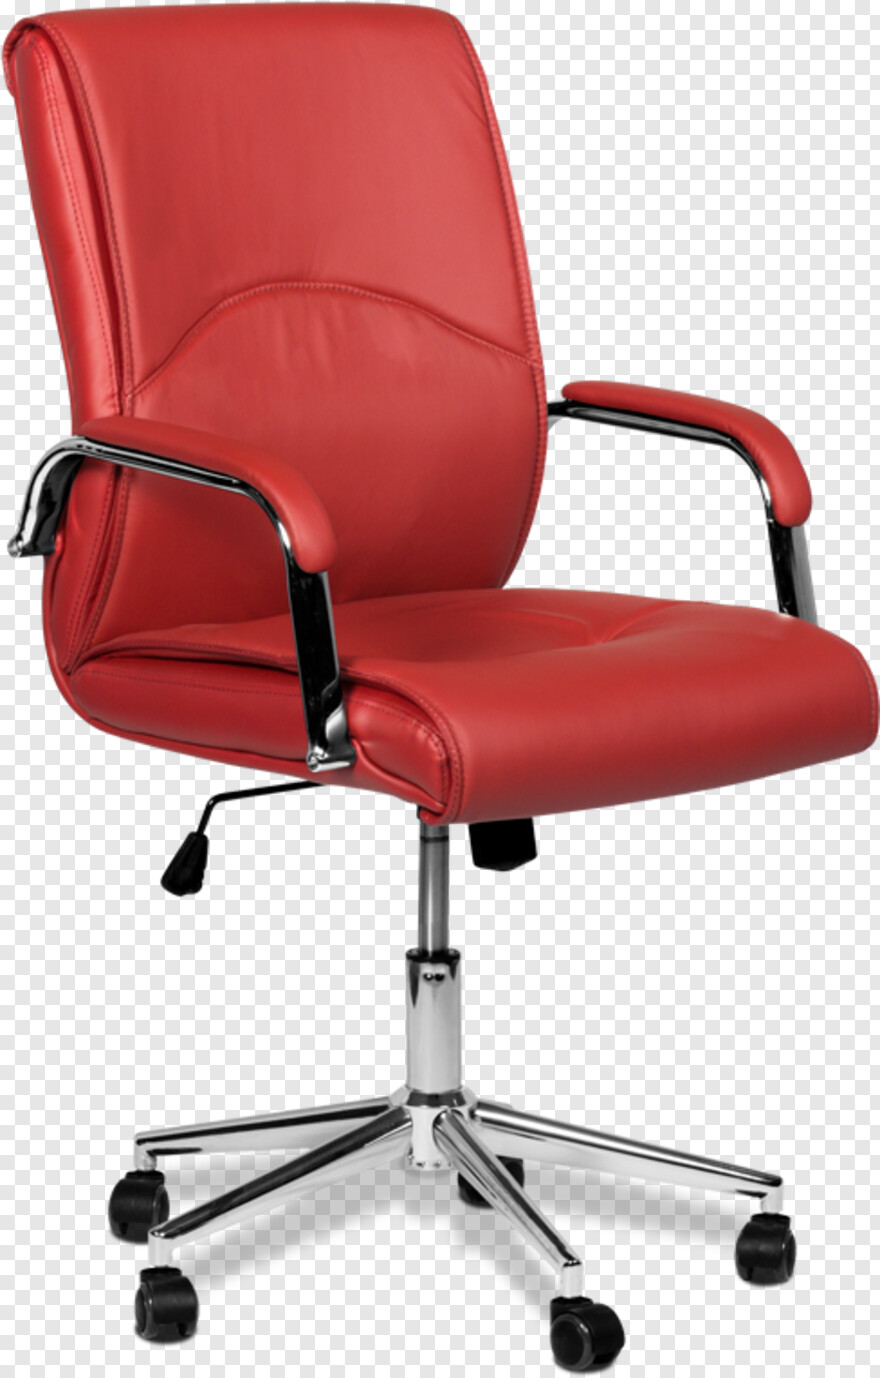 chair # 451932